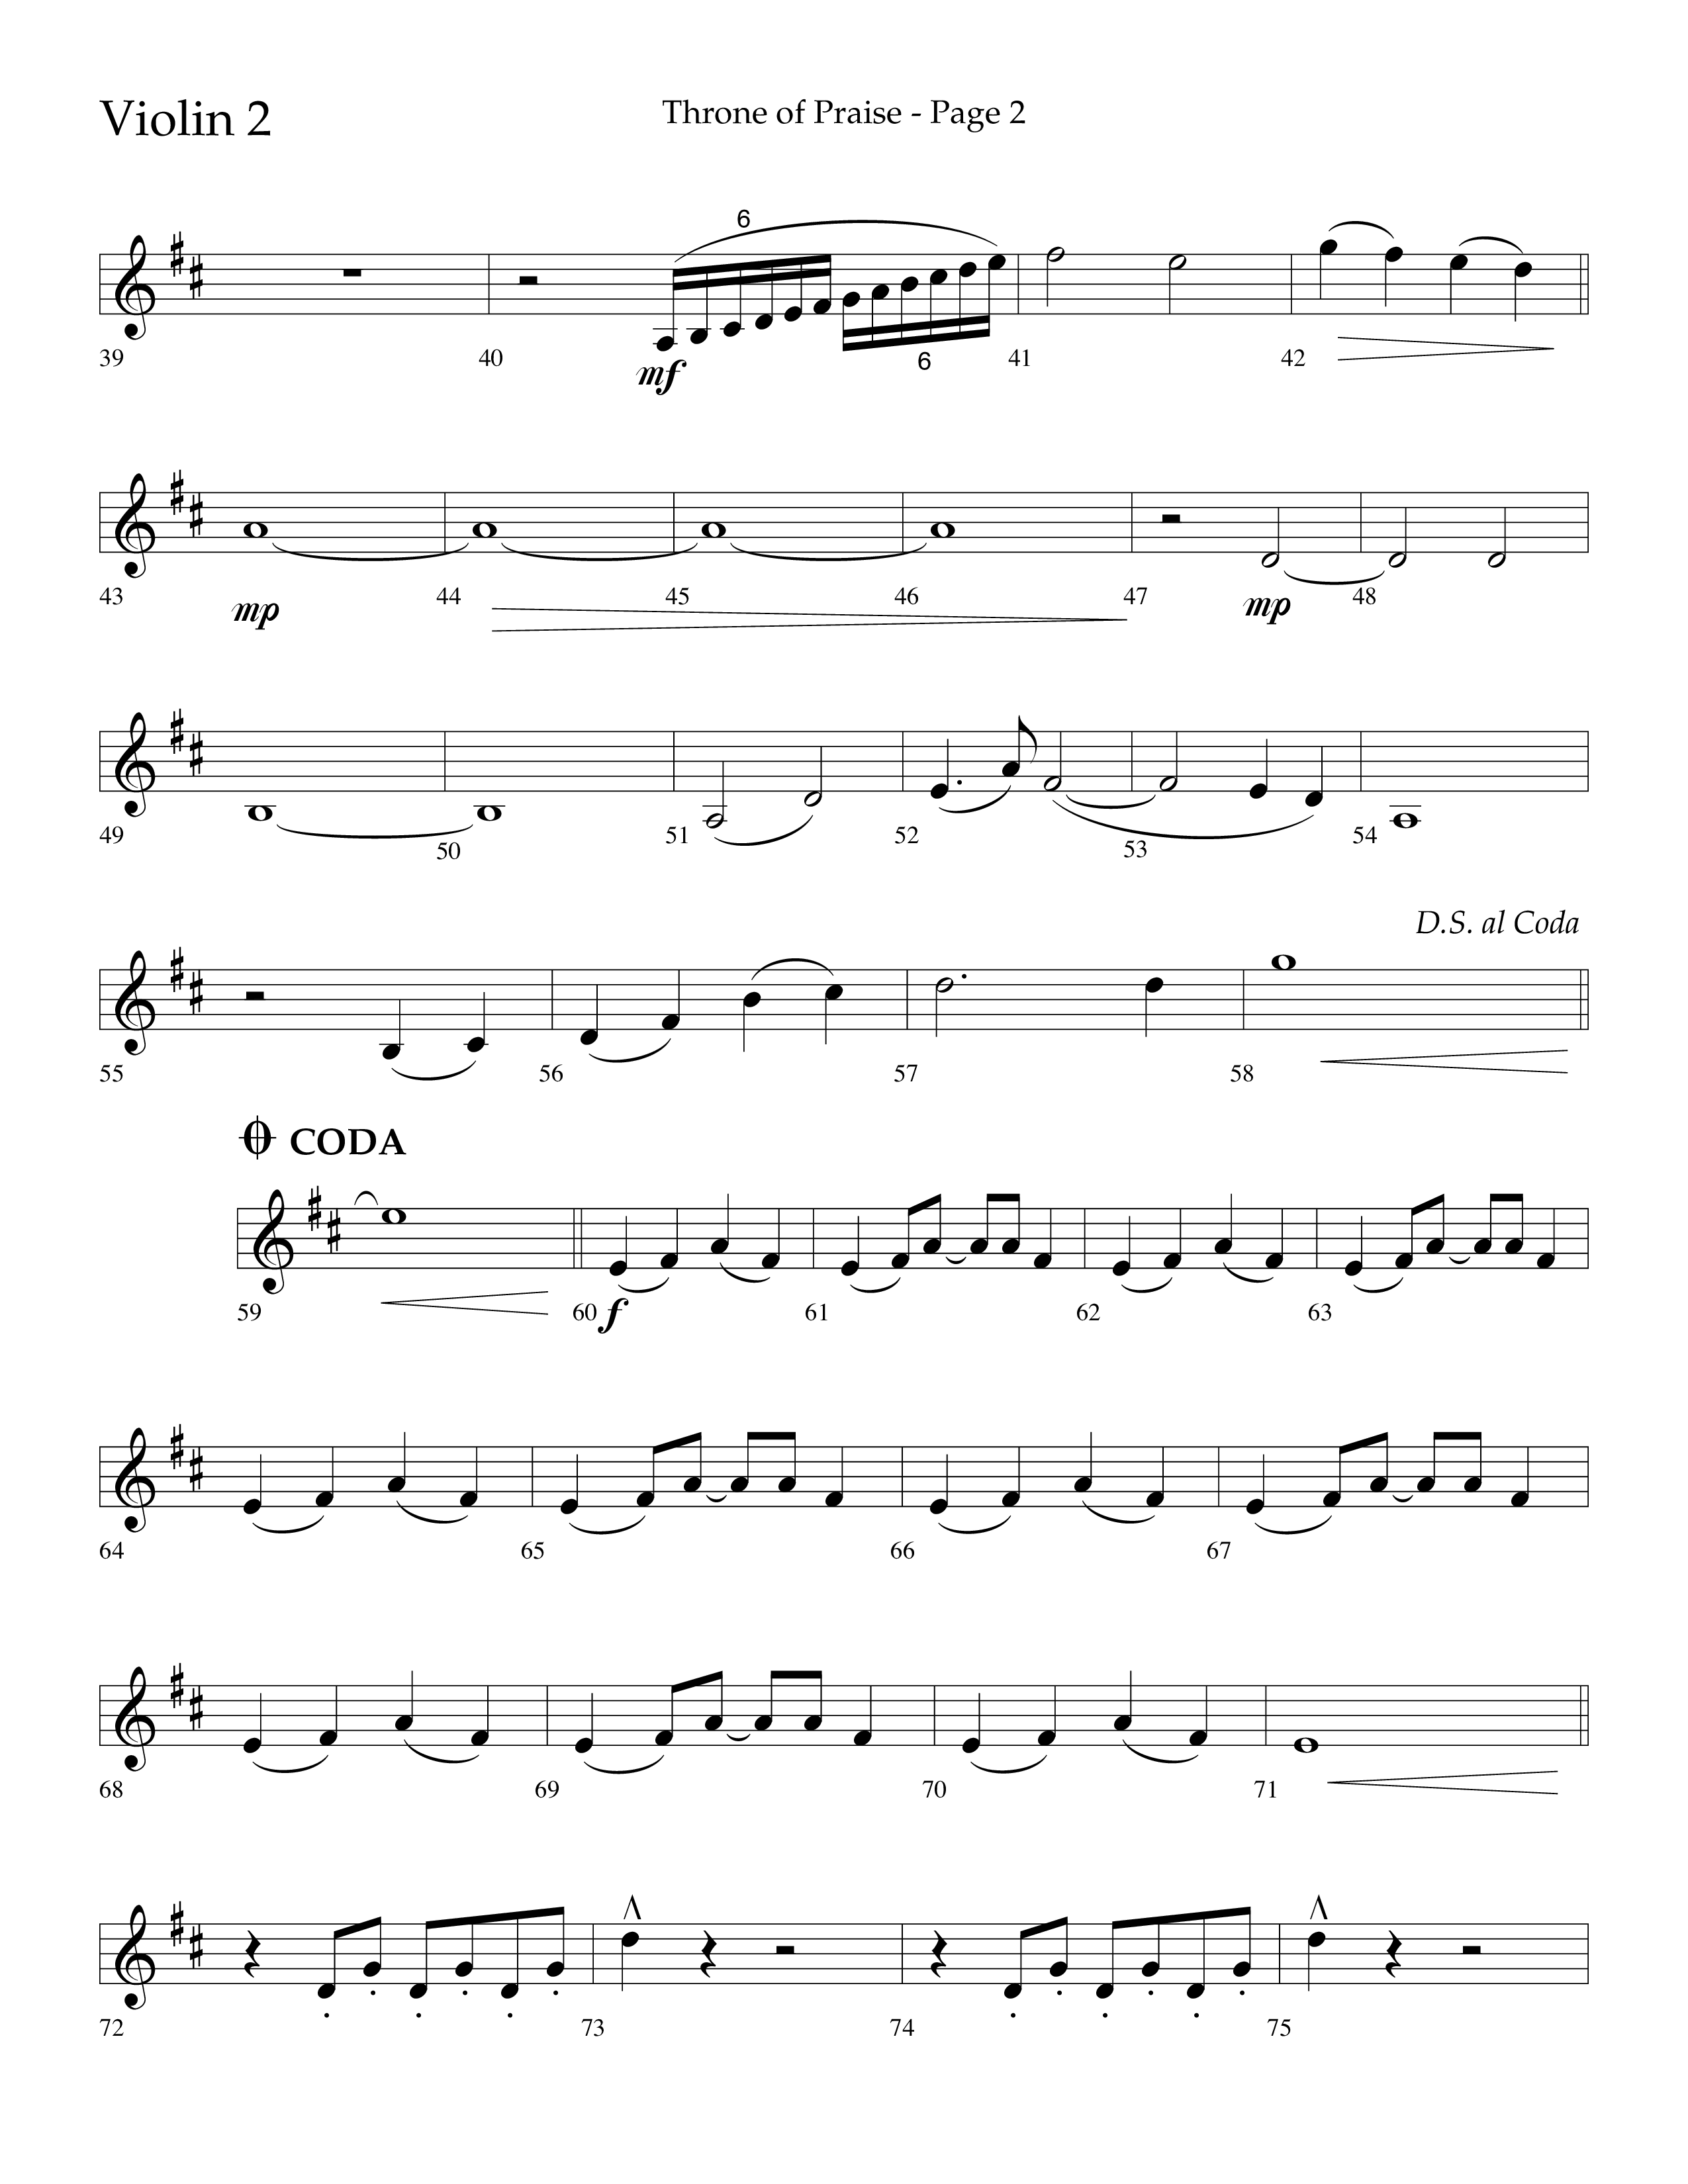 Throne Of Praise (Choral Anthem SATB) Violin 2 (Lifeway Choral / Arr. J. Daniel Smith)